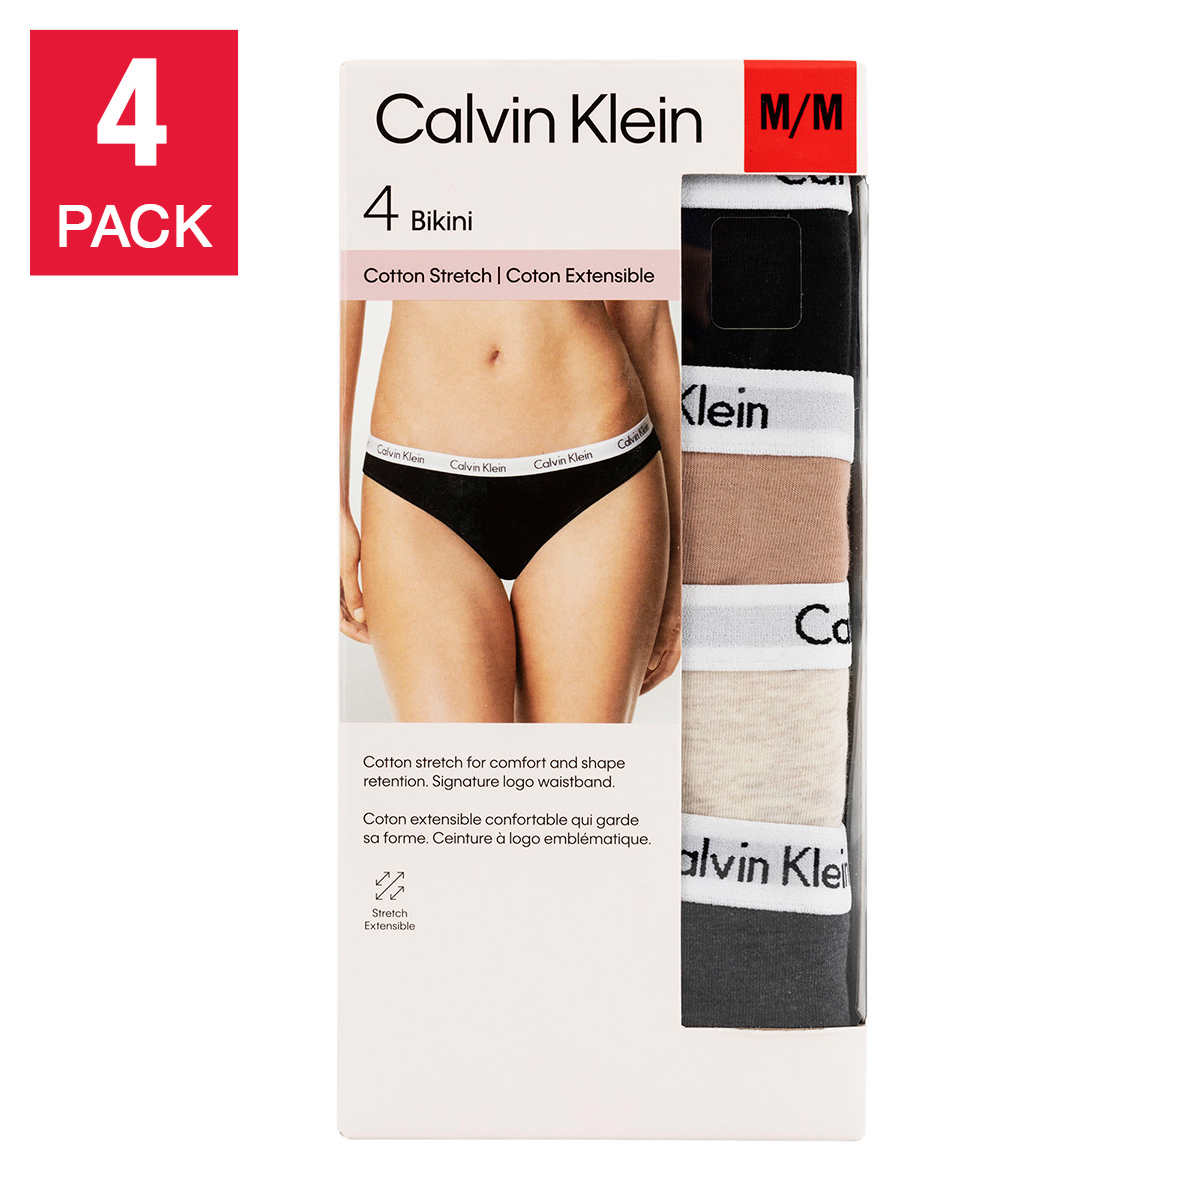 girls #calvinklein #underwear #bikini Calvin Klein's underwear is